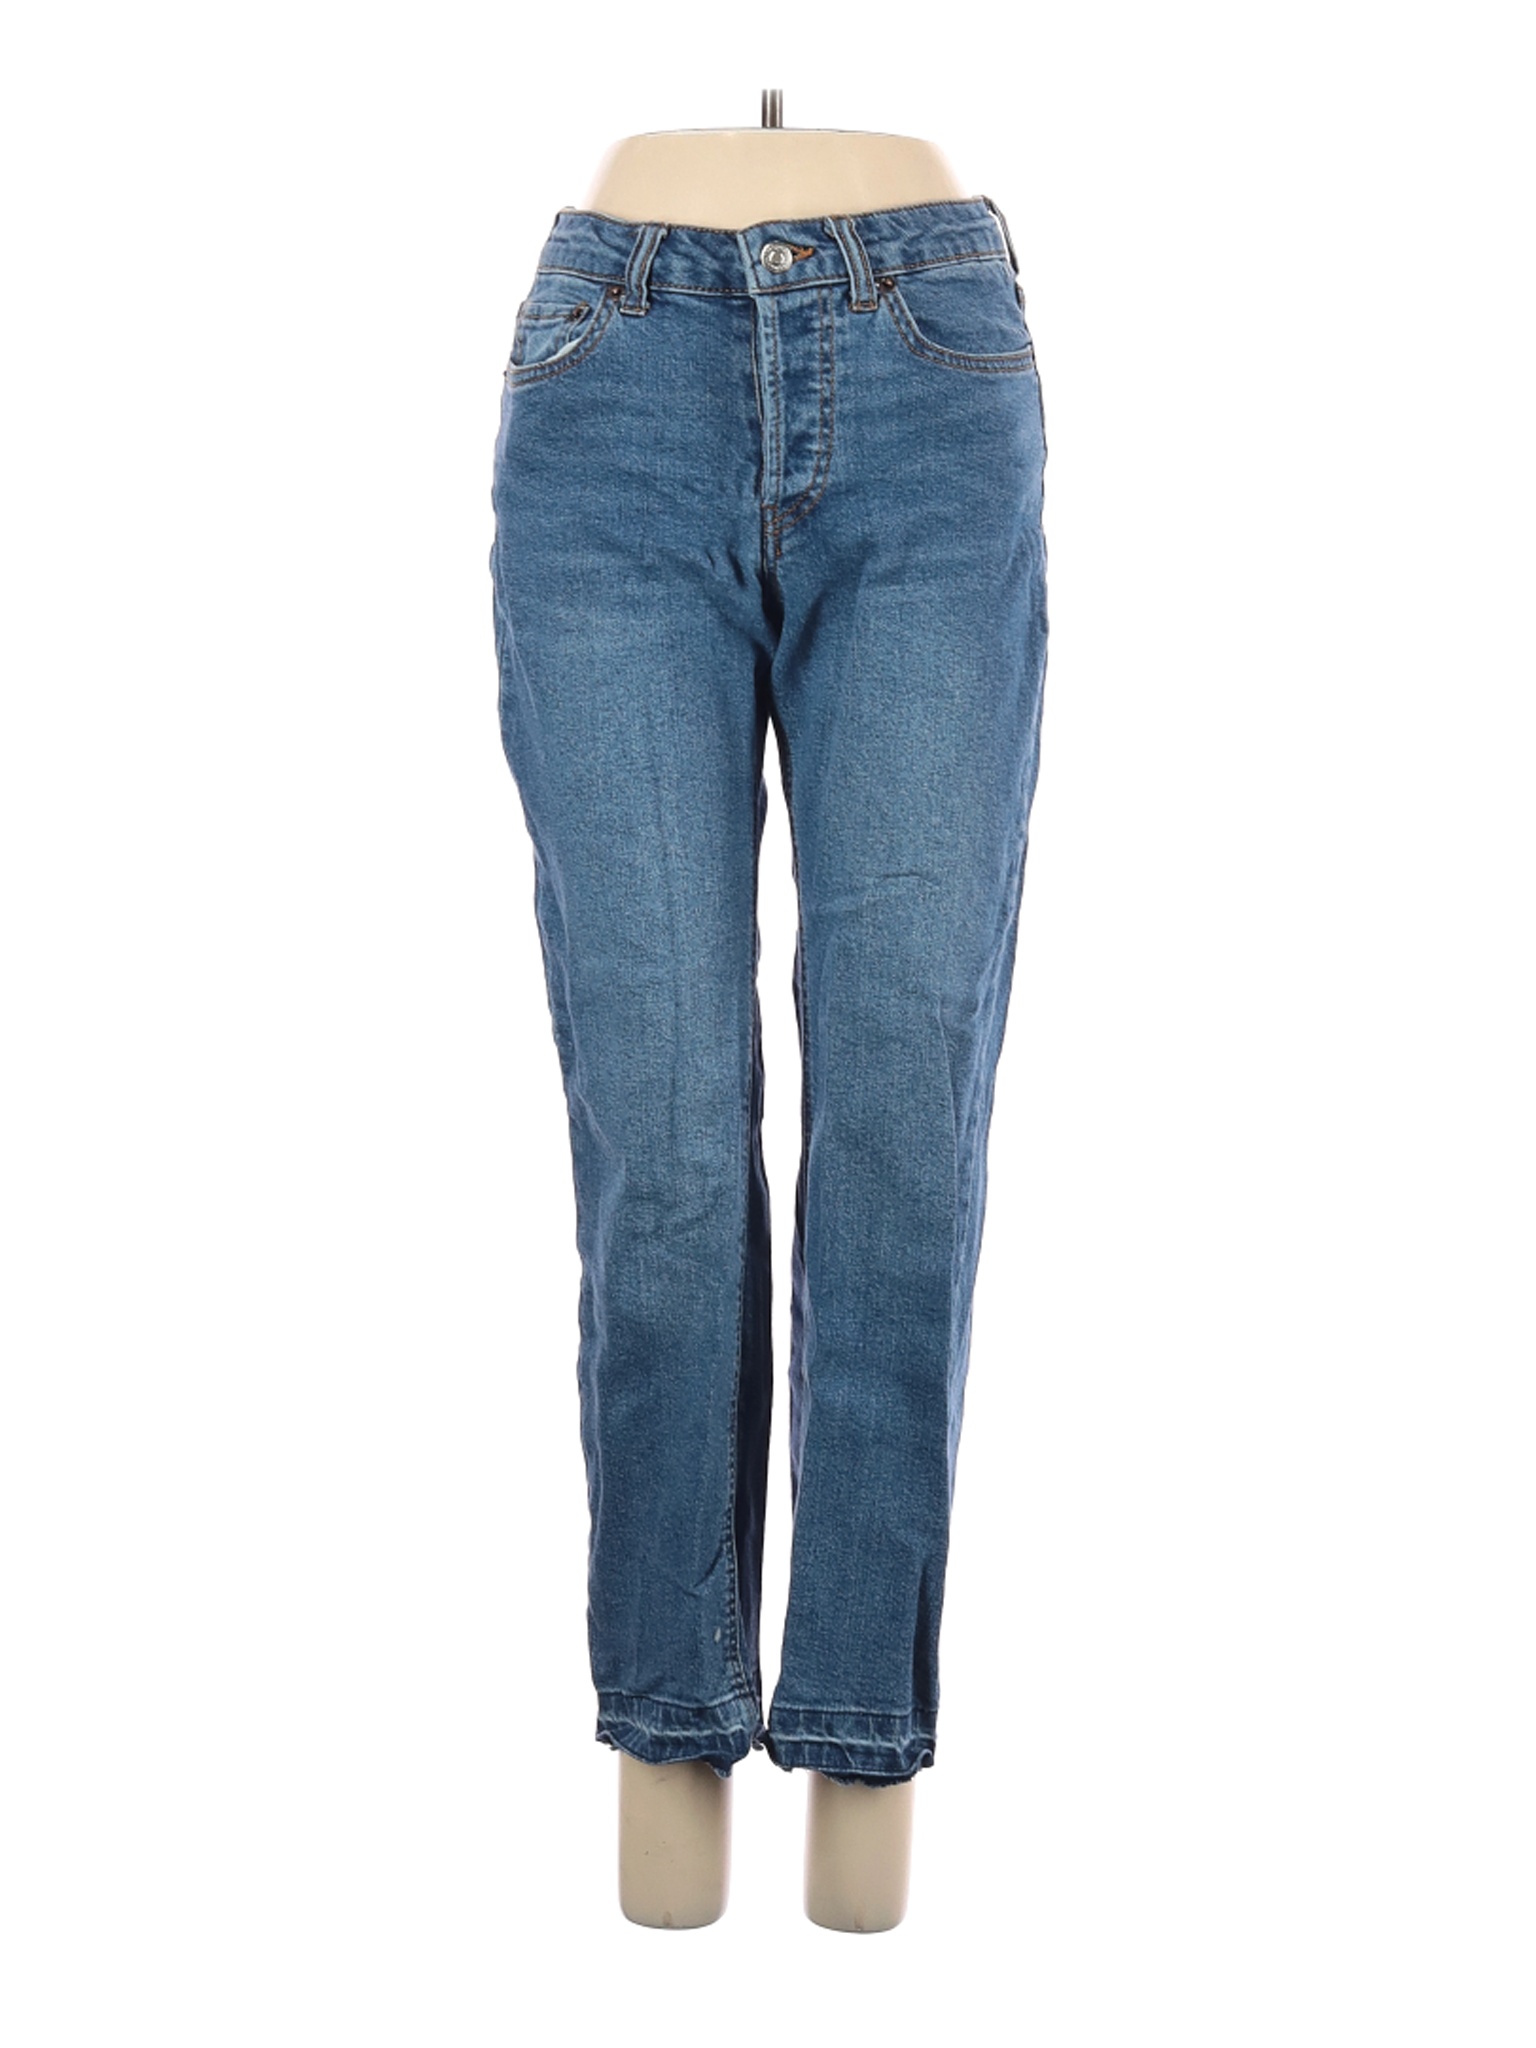 POPSUGAR Women Blue Jeans 2 | eBay